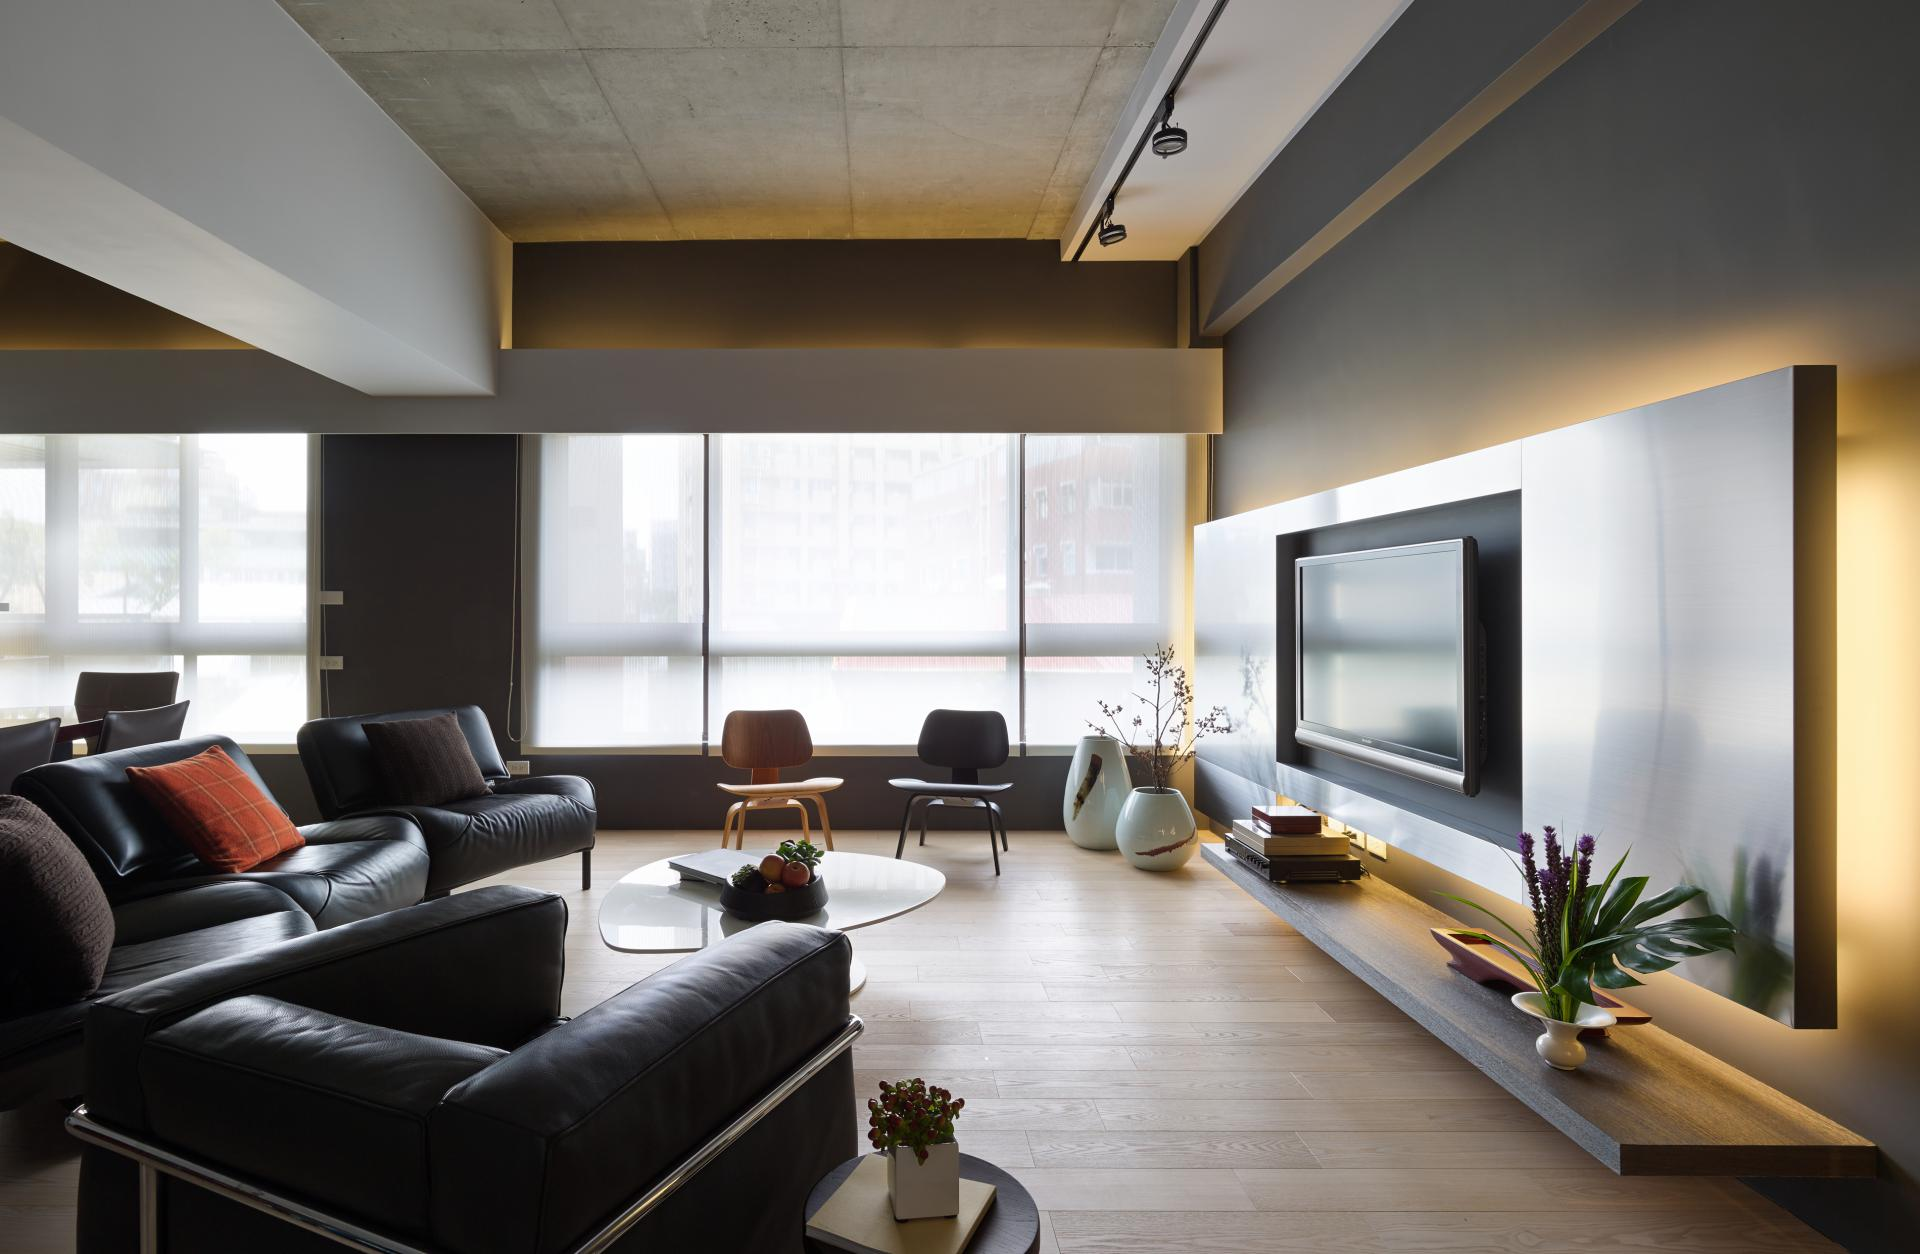 Wedo thiết kế nội thất phòng khách đẹp lấy cảm hứng từ thiên nhiên